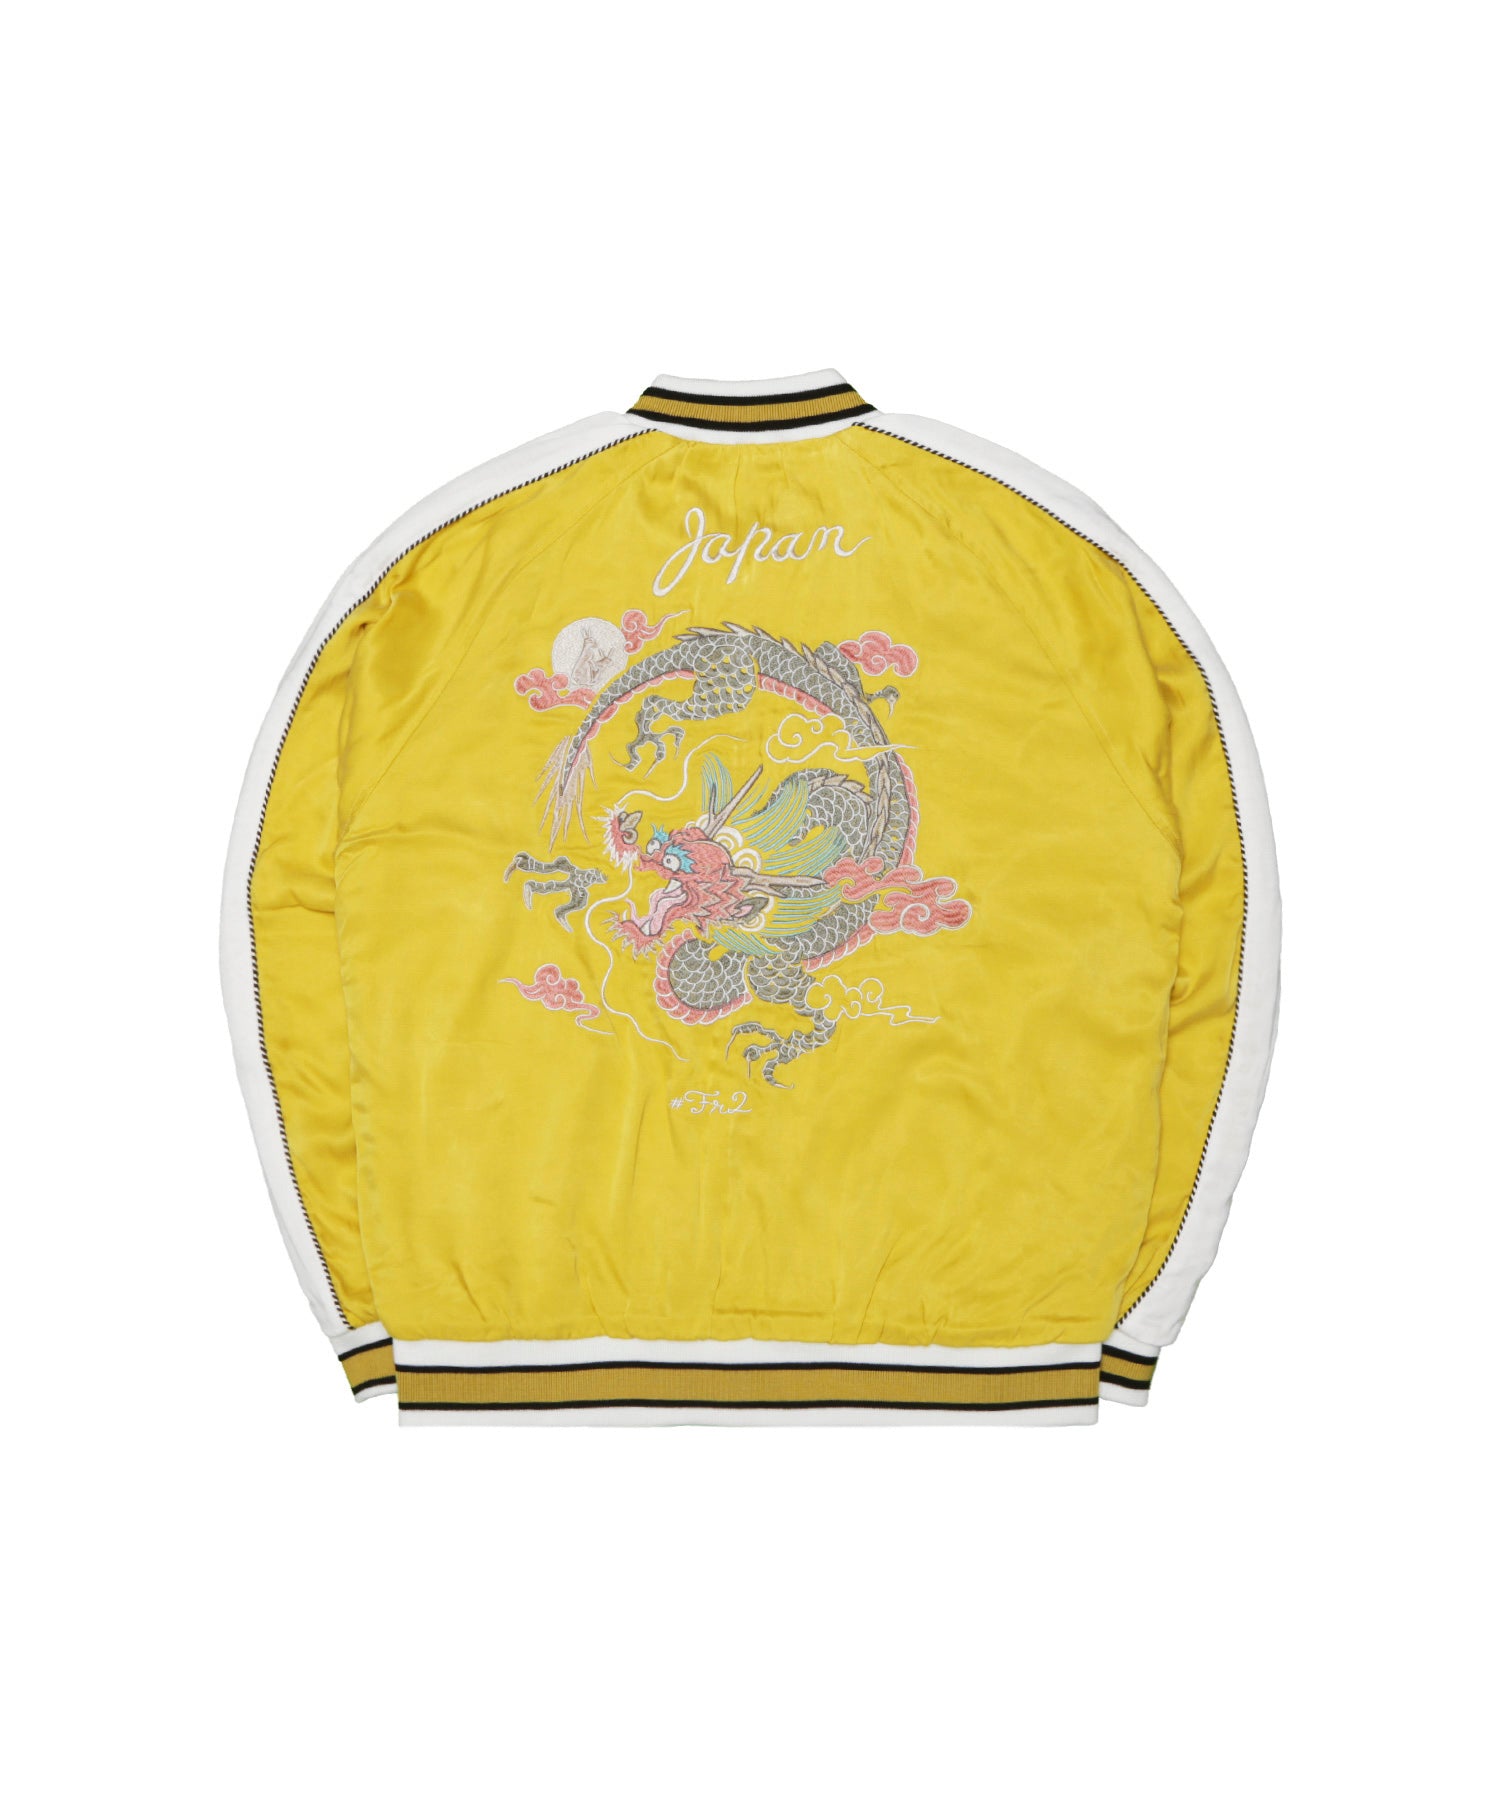 コットン43%【ダイリク】Dragon Embroidery Souvenir Jacket